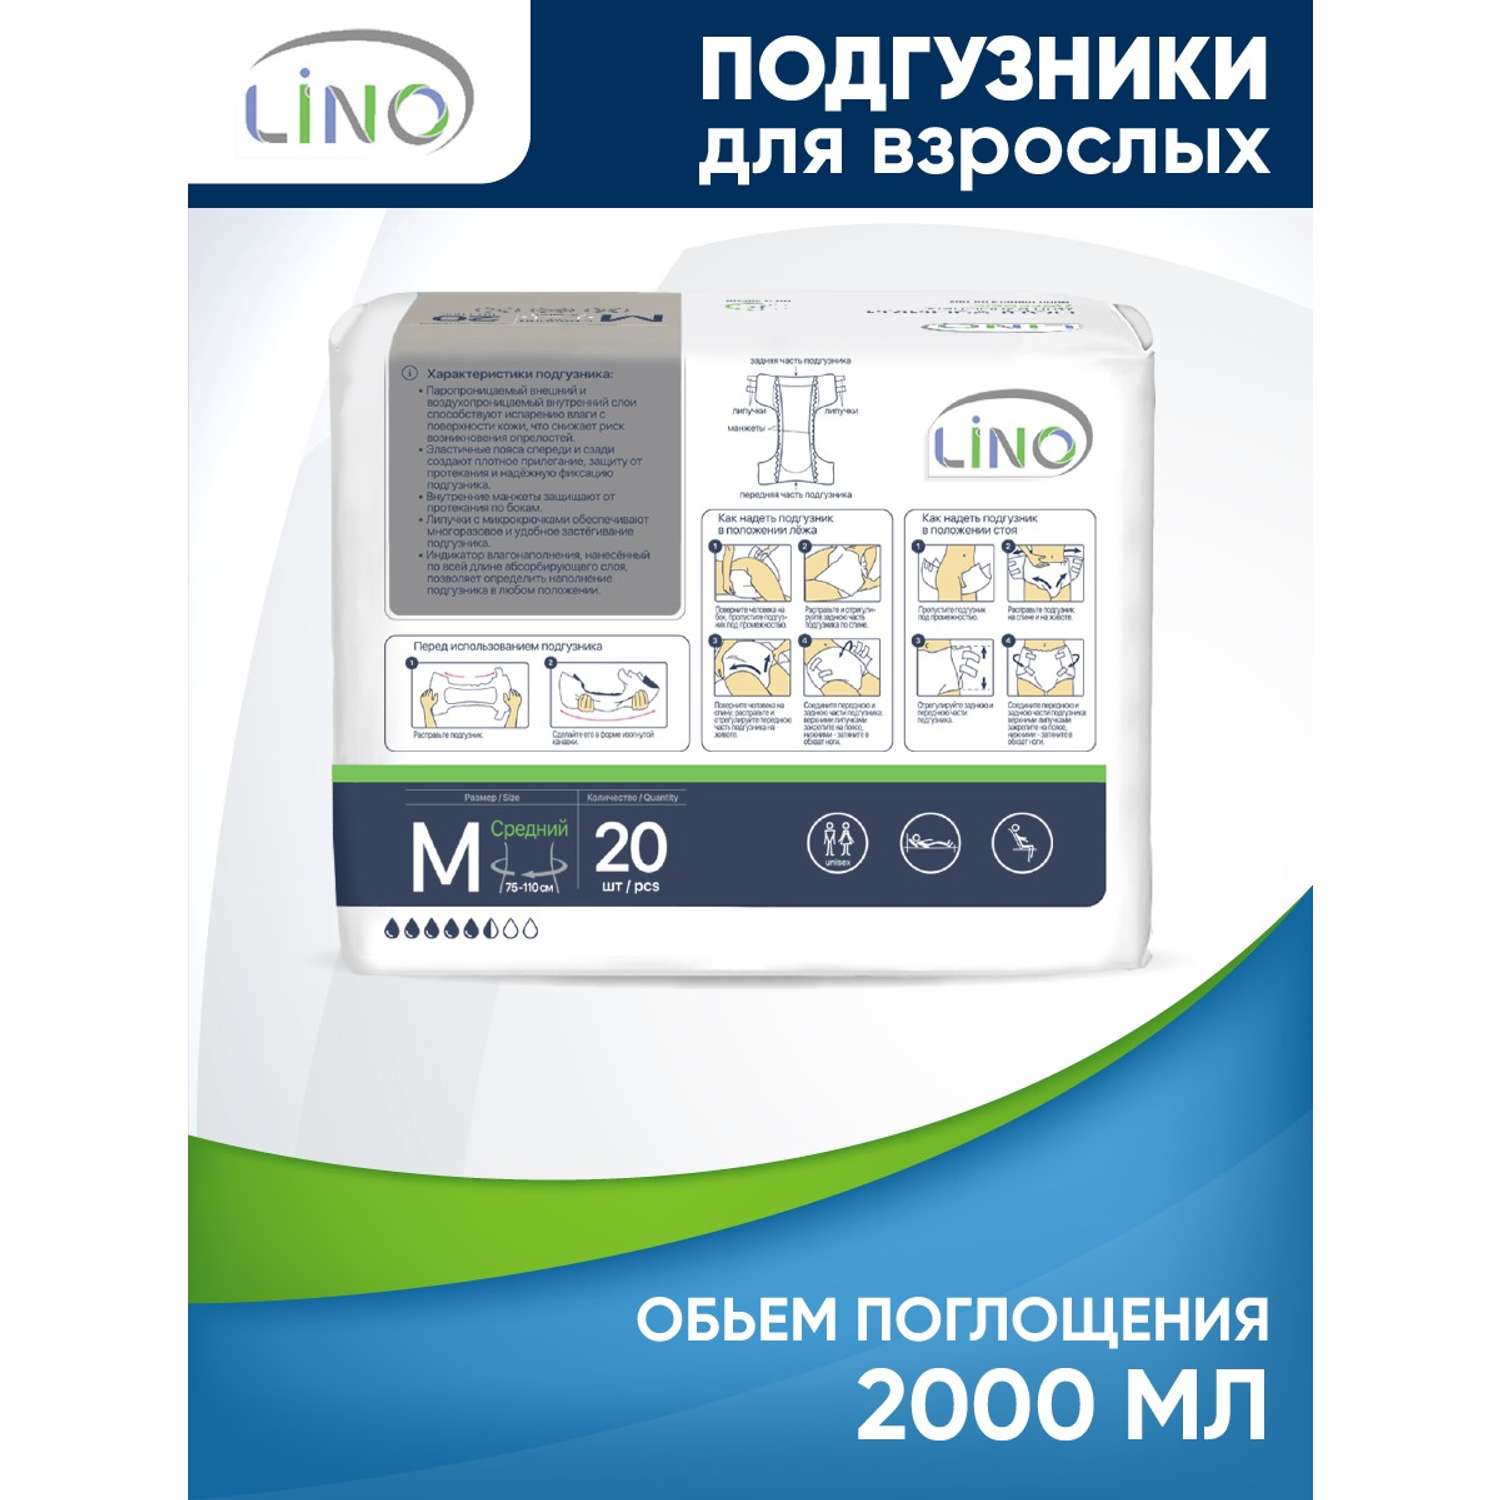 Подгузники для взрослых LINO M (Medium) 2000 мл 20 шт - фото 3